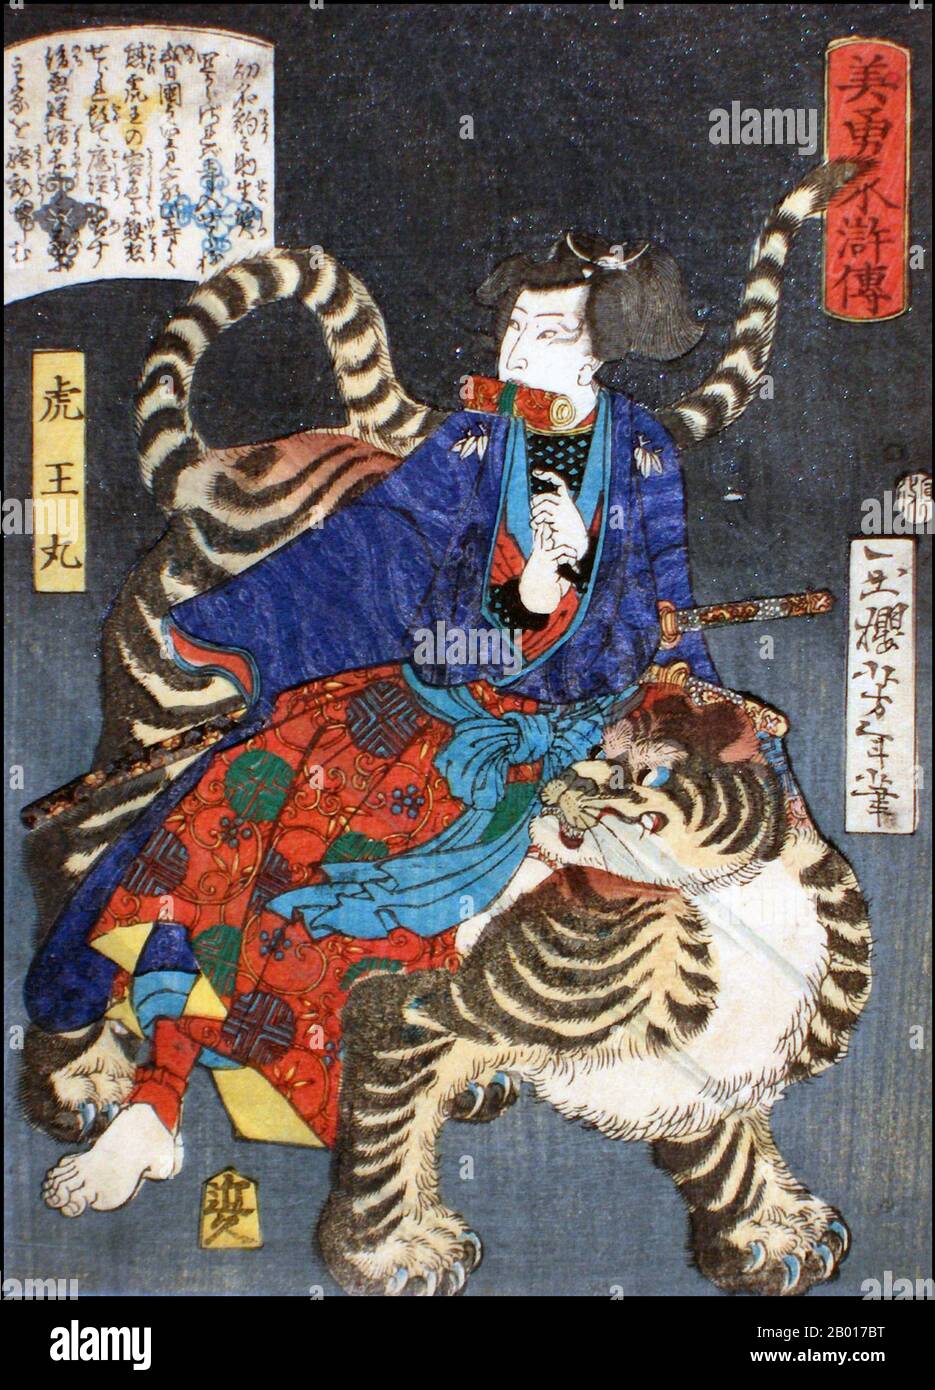 Giappone: 'Il leopardo Boy Koo Maru (Hyonosuke)'. Ukiyo-e stampa di blocco di legno dalla serie 'Eroi del margine d'acqua' di Tsukioka Yoshitoshi (1839 - 9 giugno 1892), 1866. Tsukioka Yoshitoshi, anche chiamato Taiso Yoshitoshi, era un artista giapponese. È ampiamente riconosciuto come l'ultimo grande maestro di Ukiyo-e, un tipo di stampa giapponese a blocchi di legno. È inoltre considerato uno dei più grandi innovatori della forma. La sua carriera ha abbracciato due epoche – gli ultimi anni del Giappone feudale, e i primi anni del Giappone moderno dopo la Restaurazione Meiji. Foto Stock